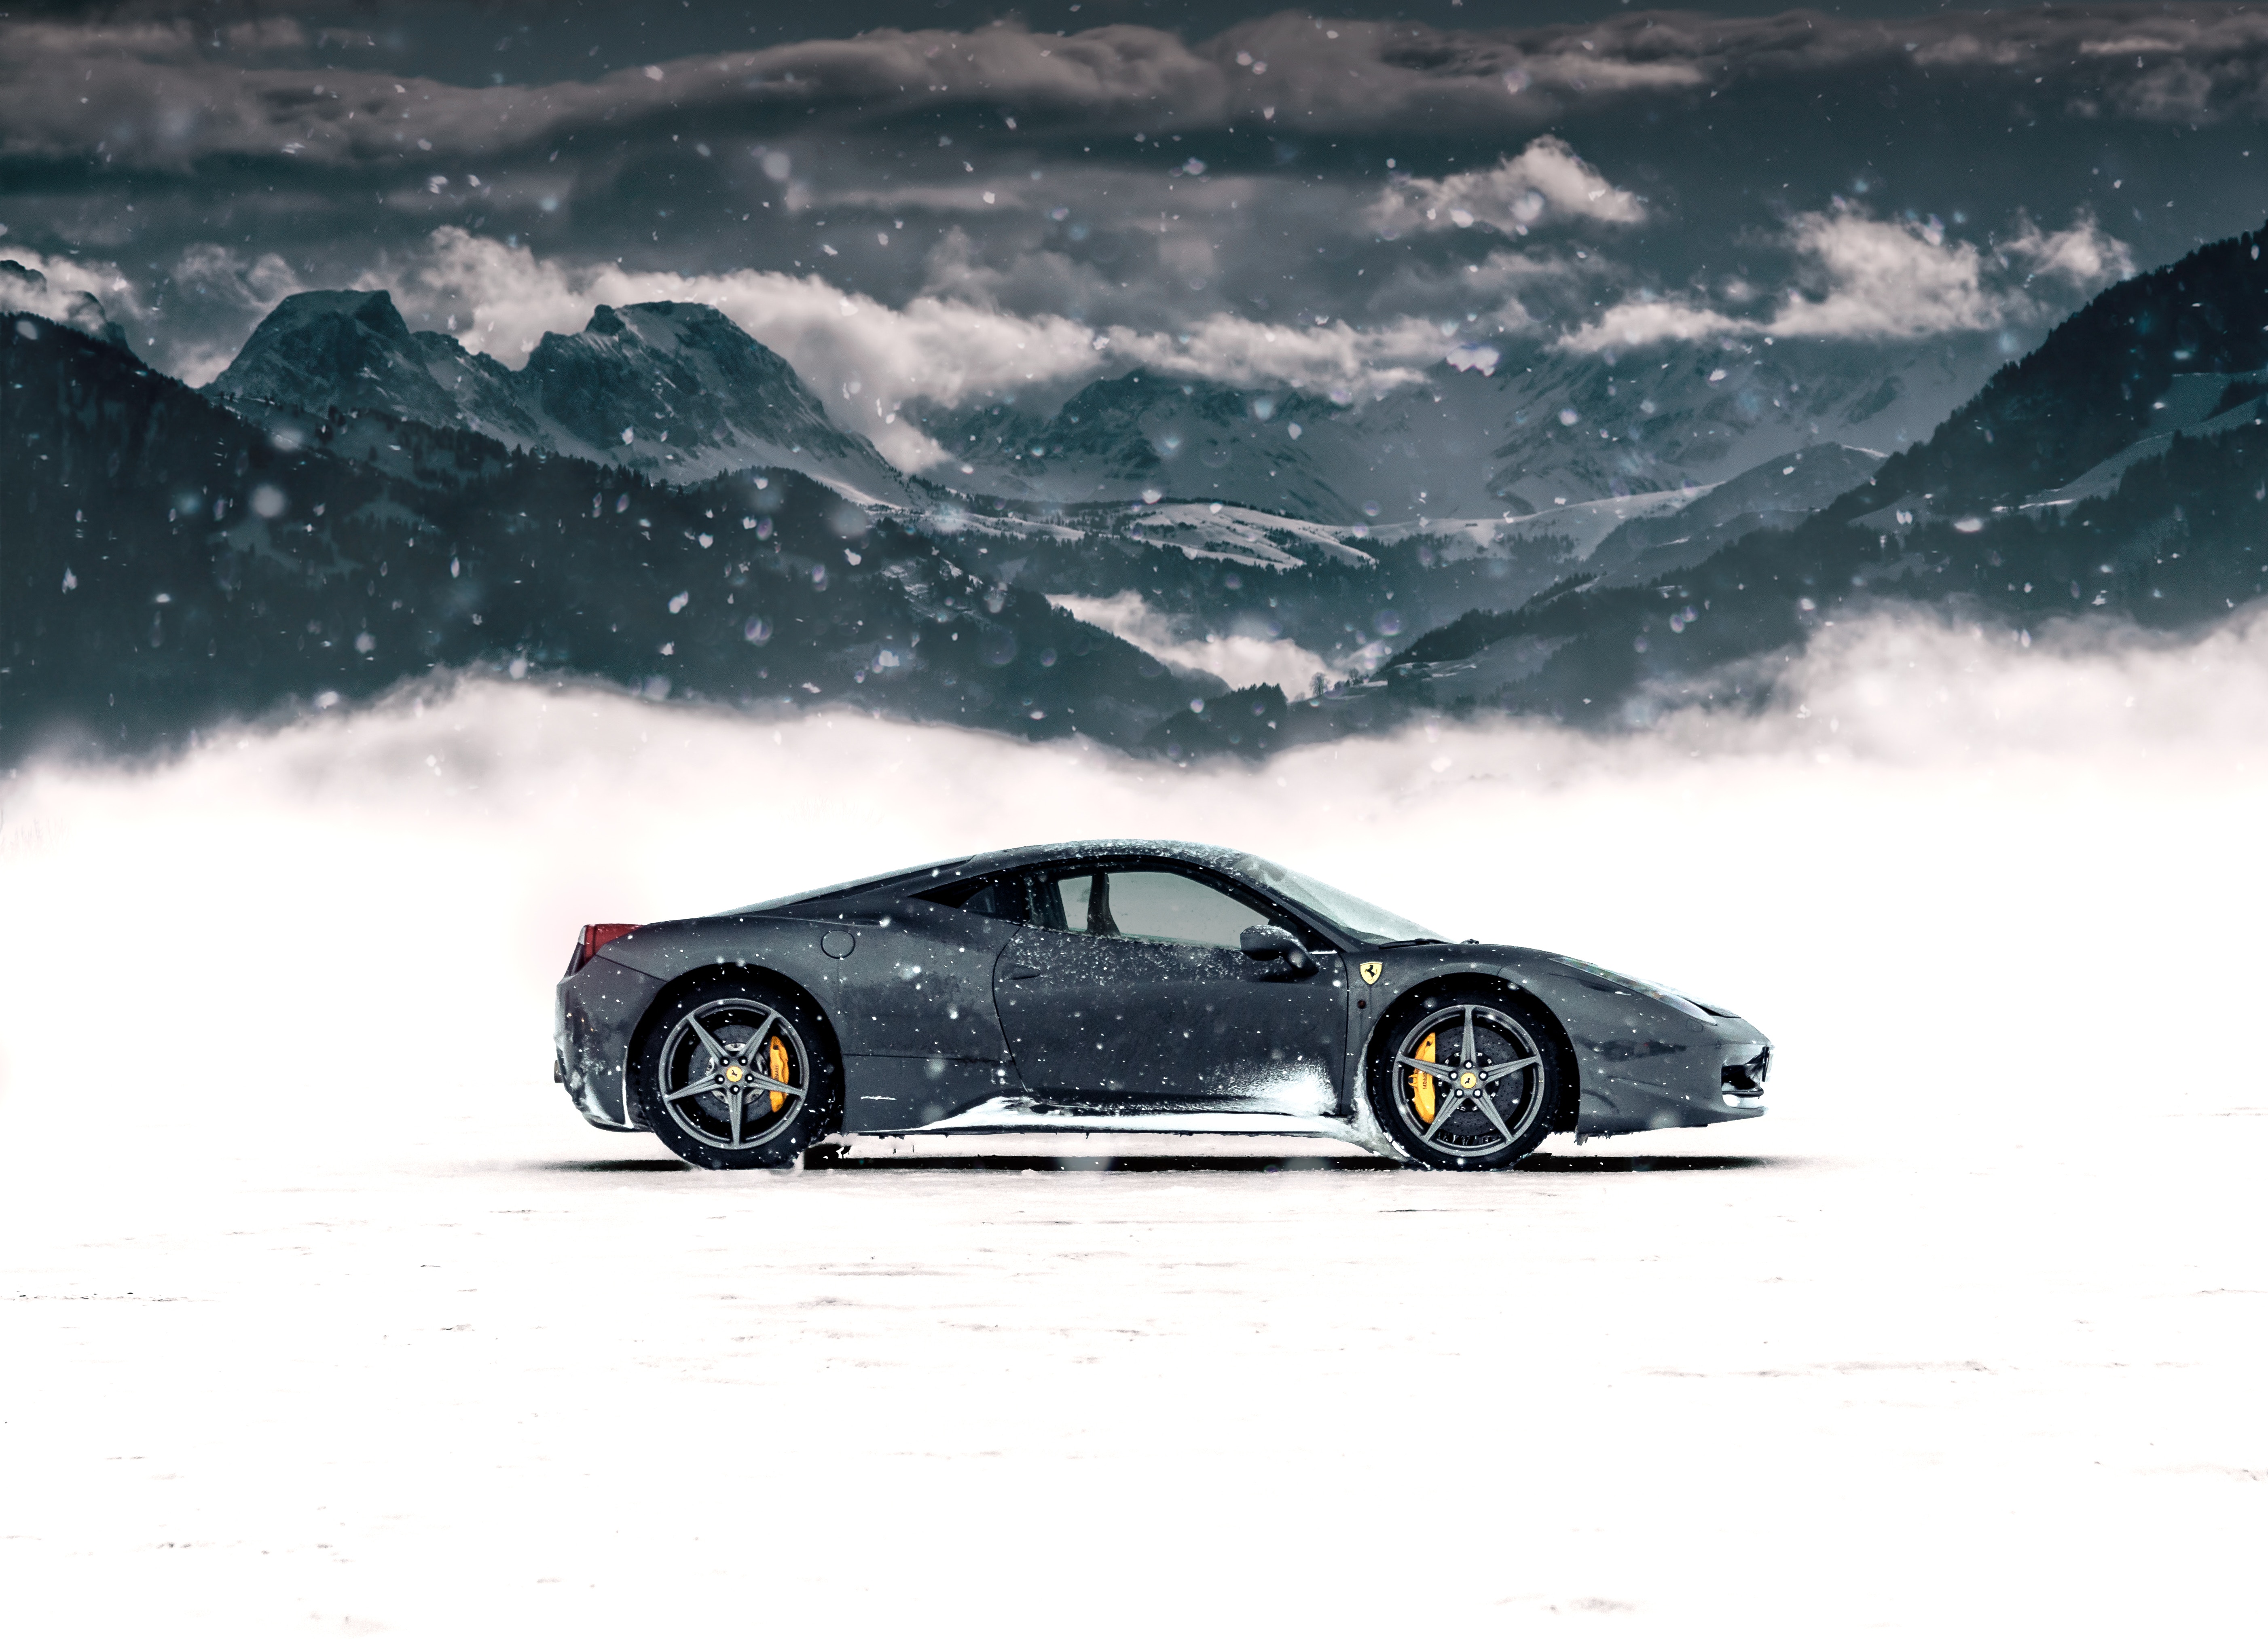 Ferrari Widescreen image